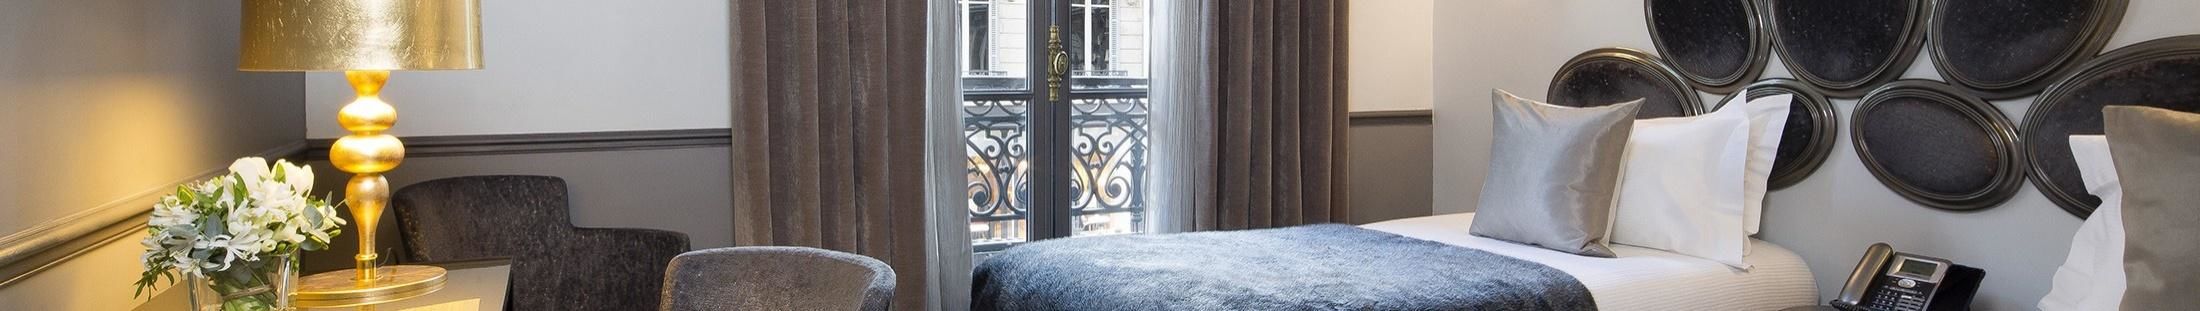 Hotel Lumen Paris Louvre - Chambre